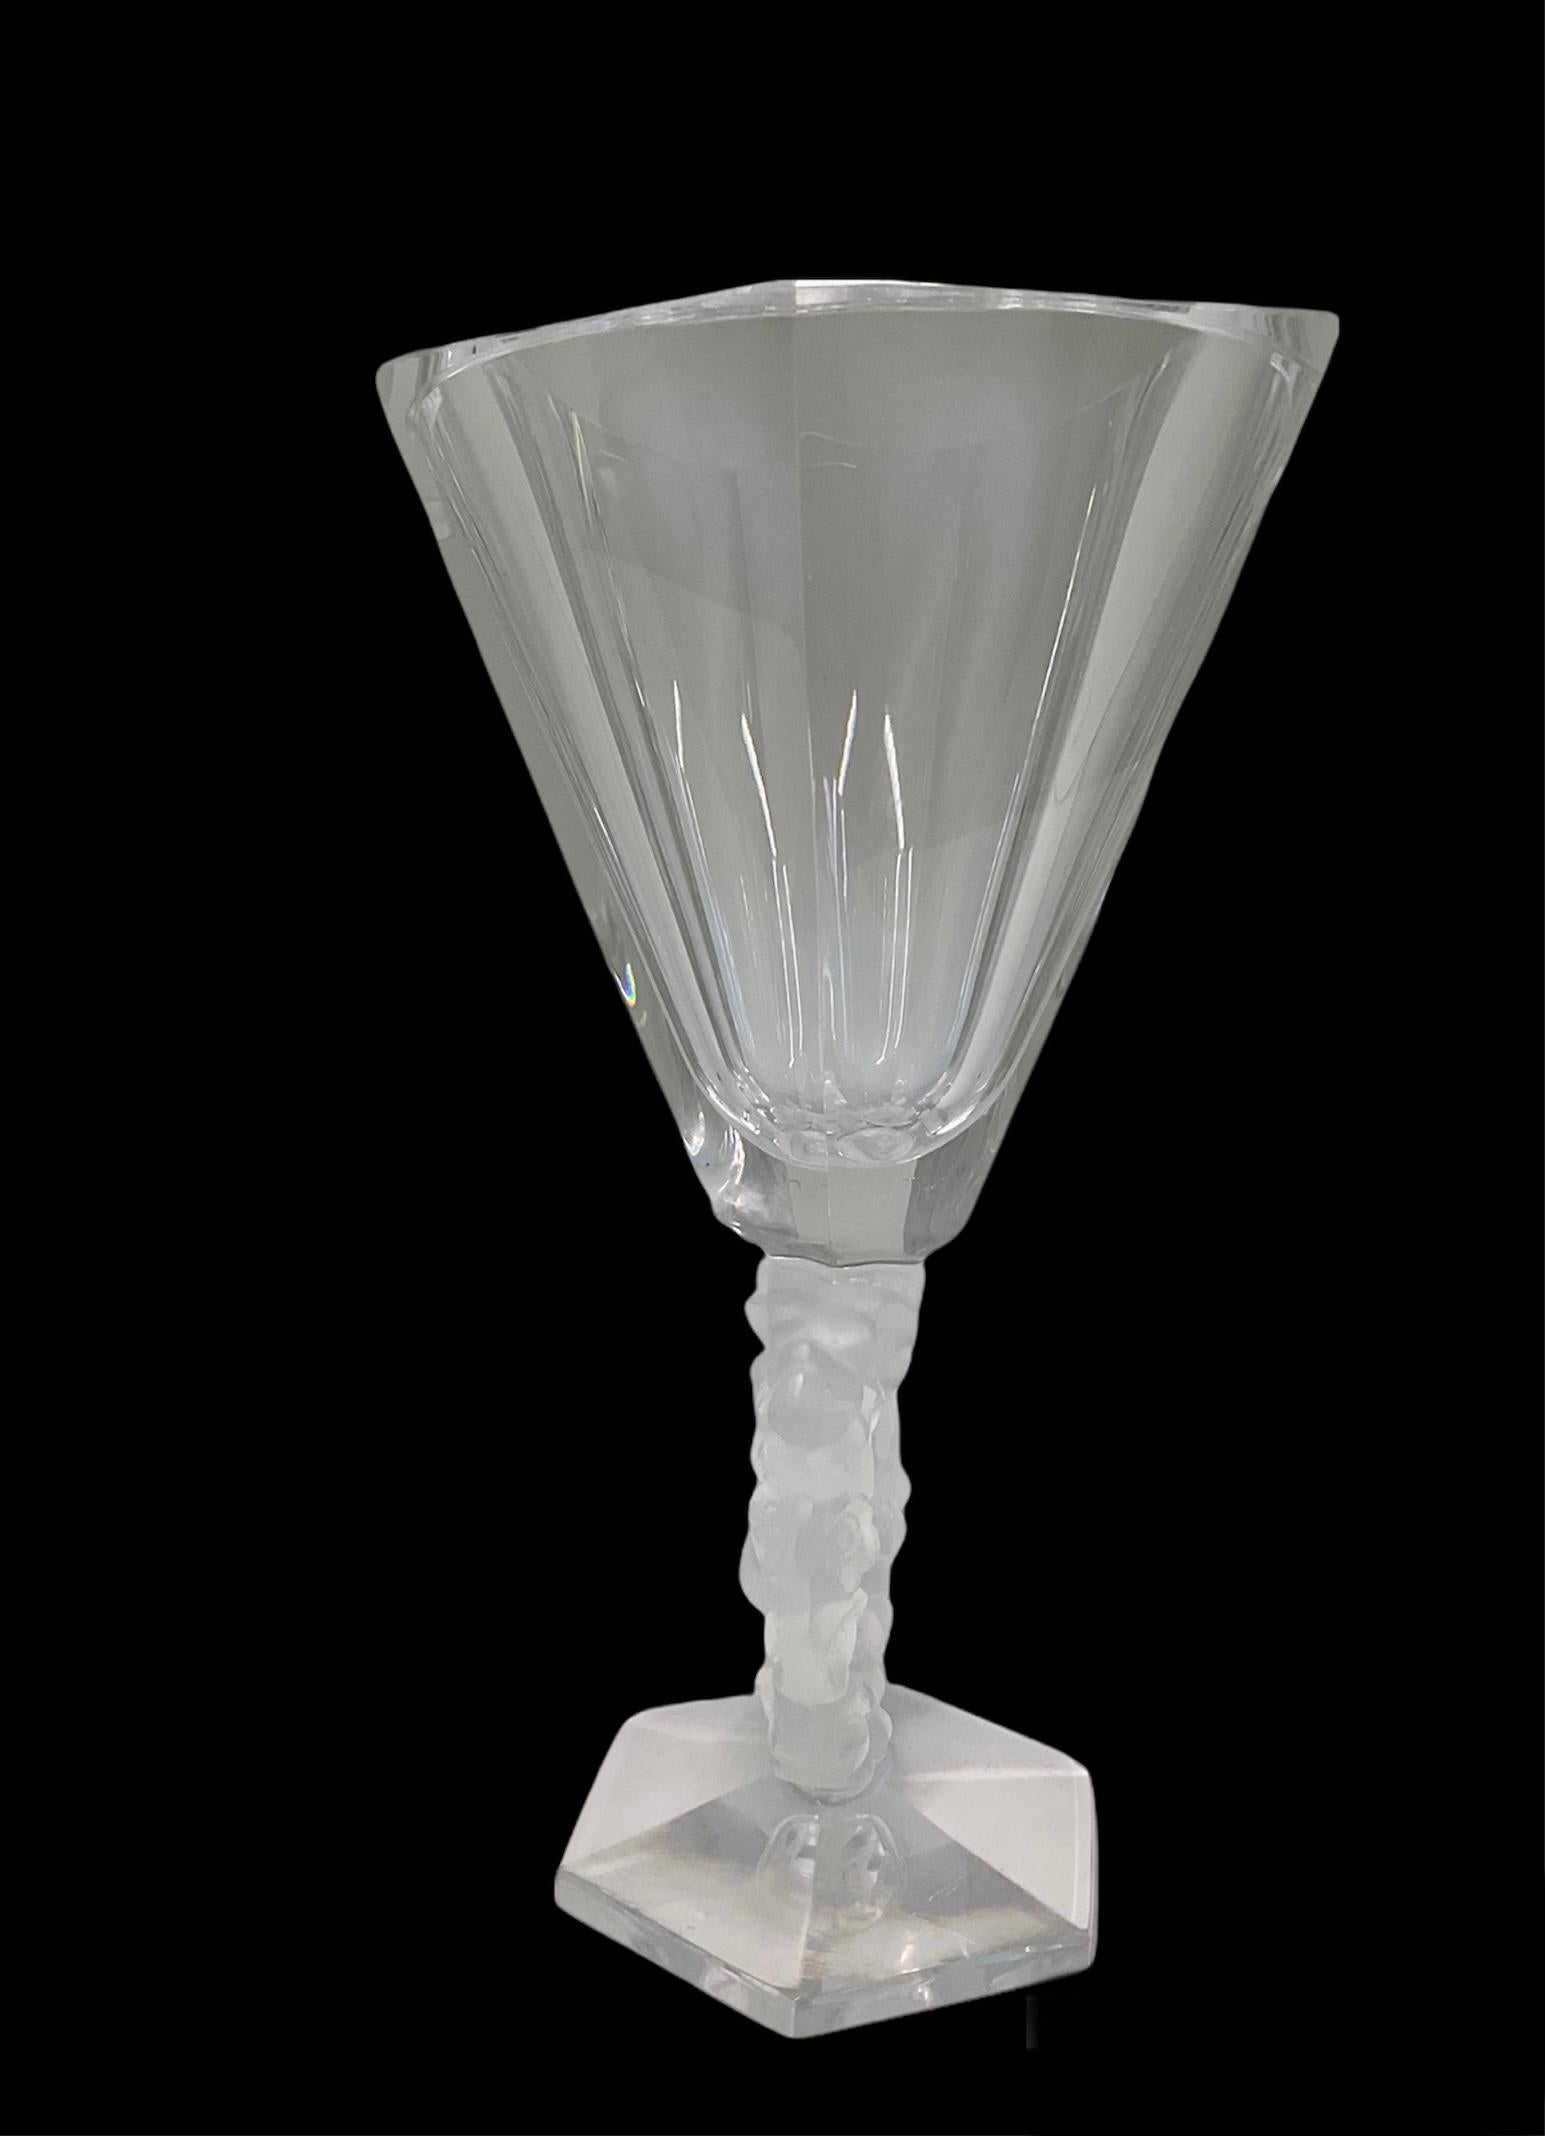 Il s'agit d'un vase à fleurs en cristal Lalique Mesange. Elle représente un vase avec une base hexagonale suivie d'une tige en forme de couronne. La couronne est composée de fleurs de pervenche décorées au centre par deux mésanges qui semblent